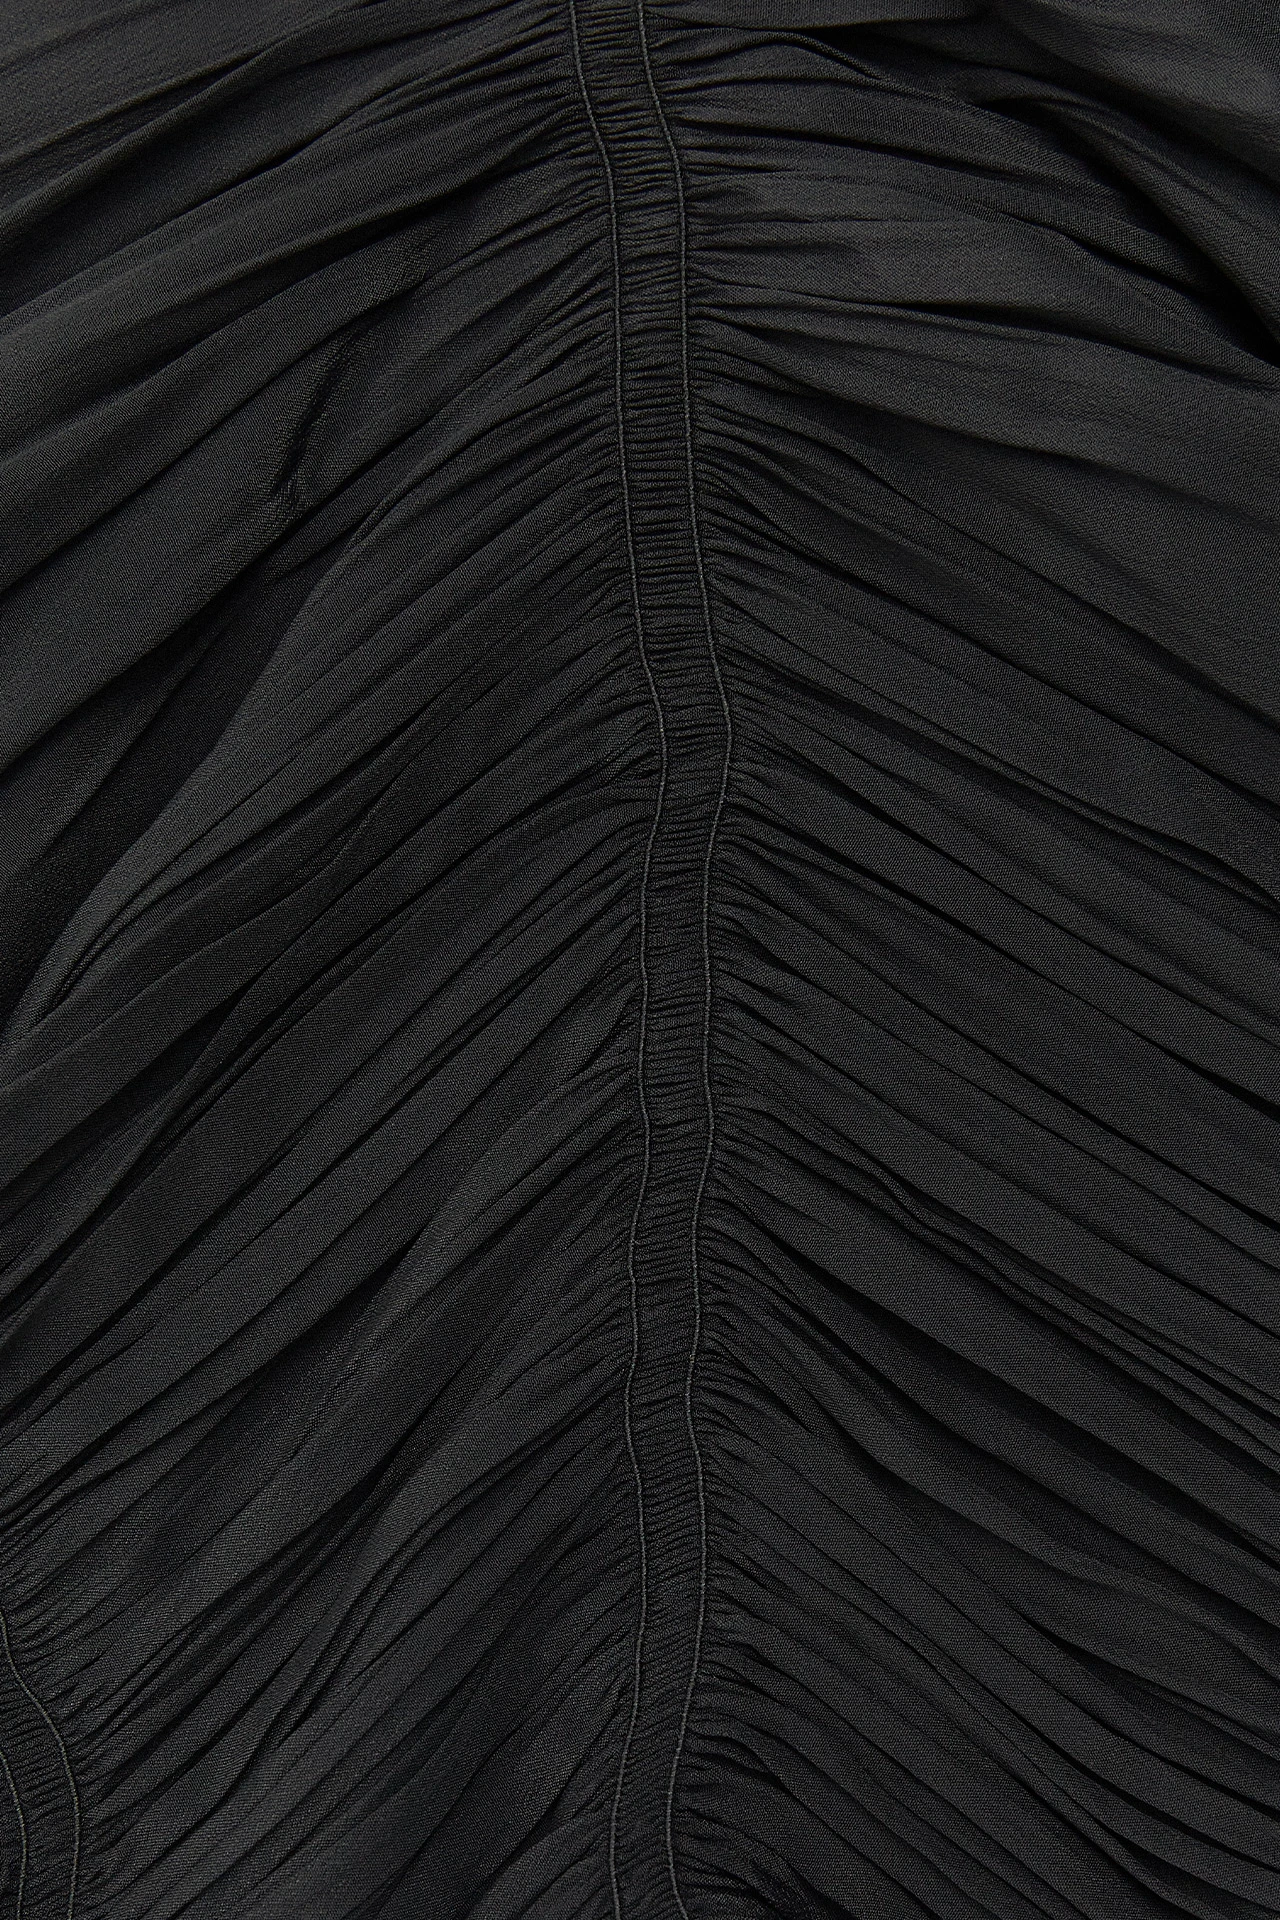 Miista-aiko-black-skirt-03